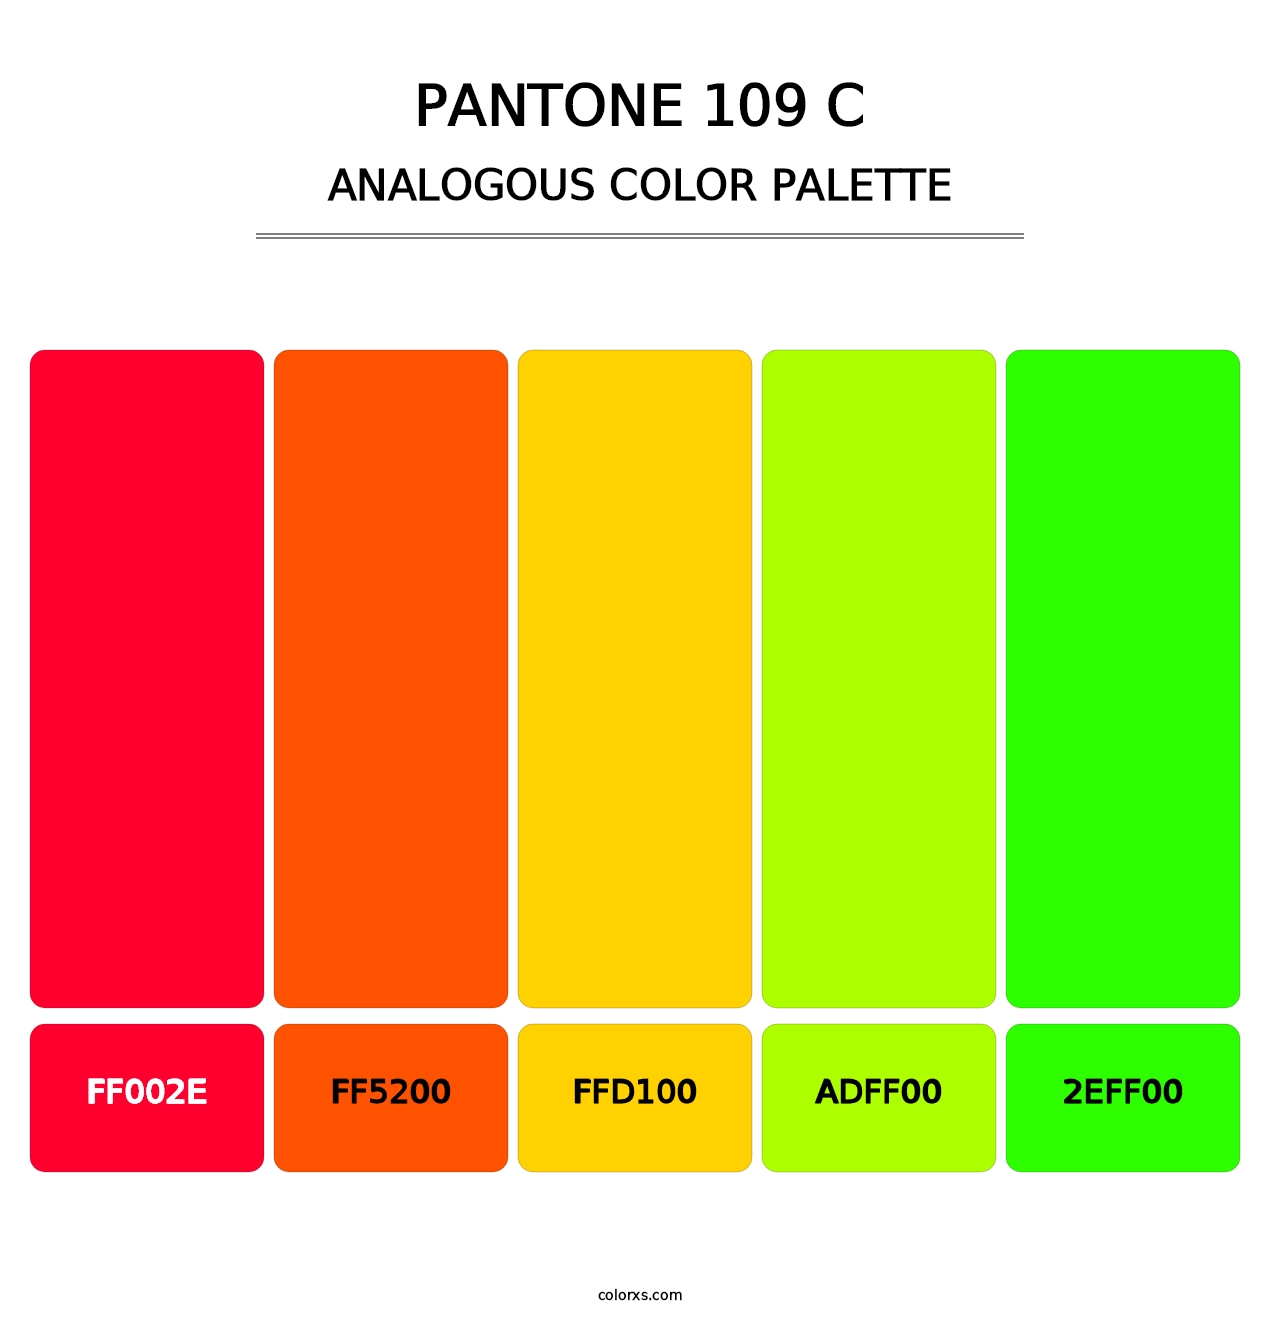 PANTONE 109 C - Analogous Color Palette